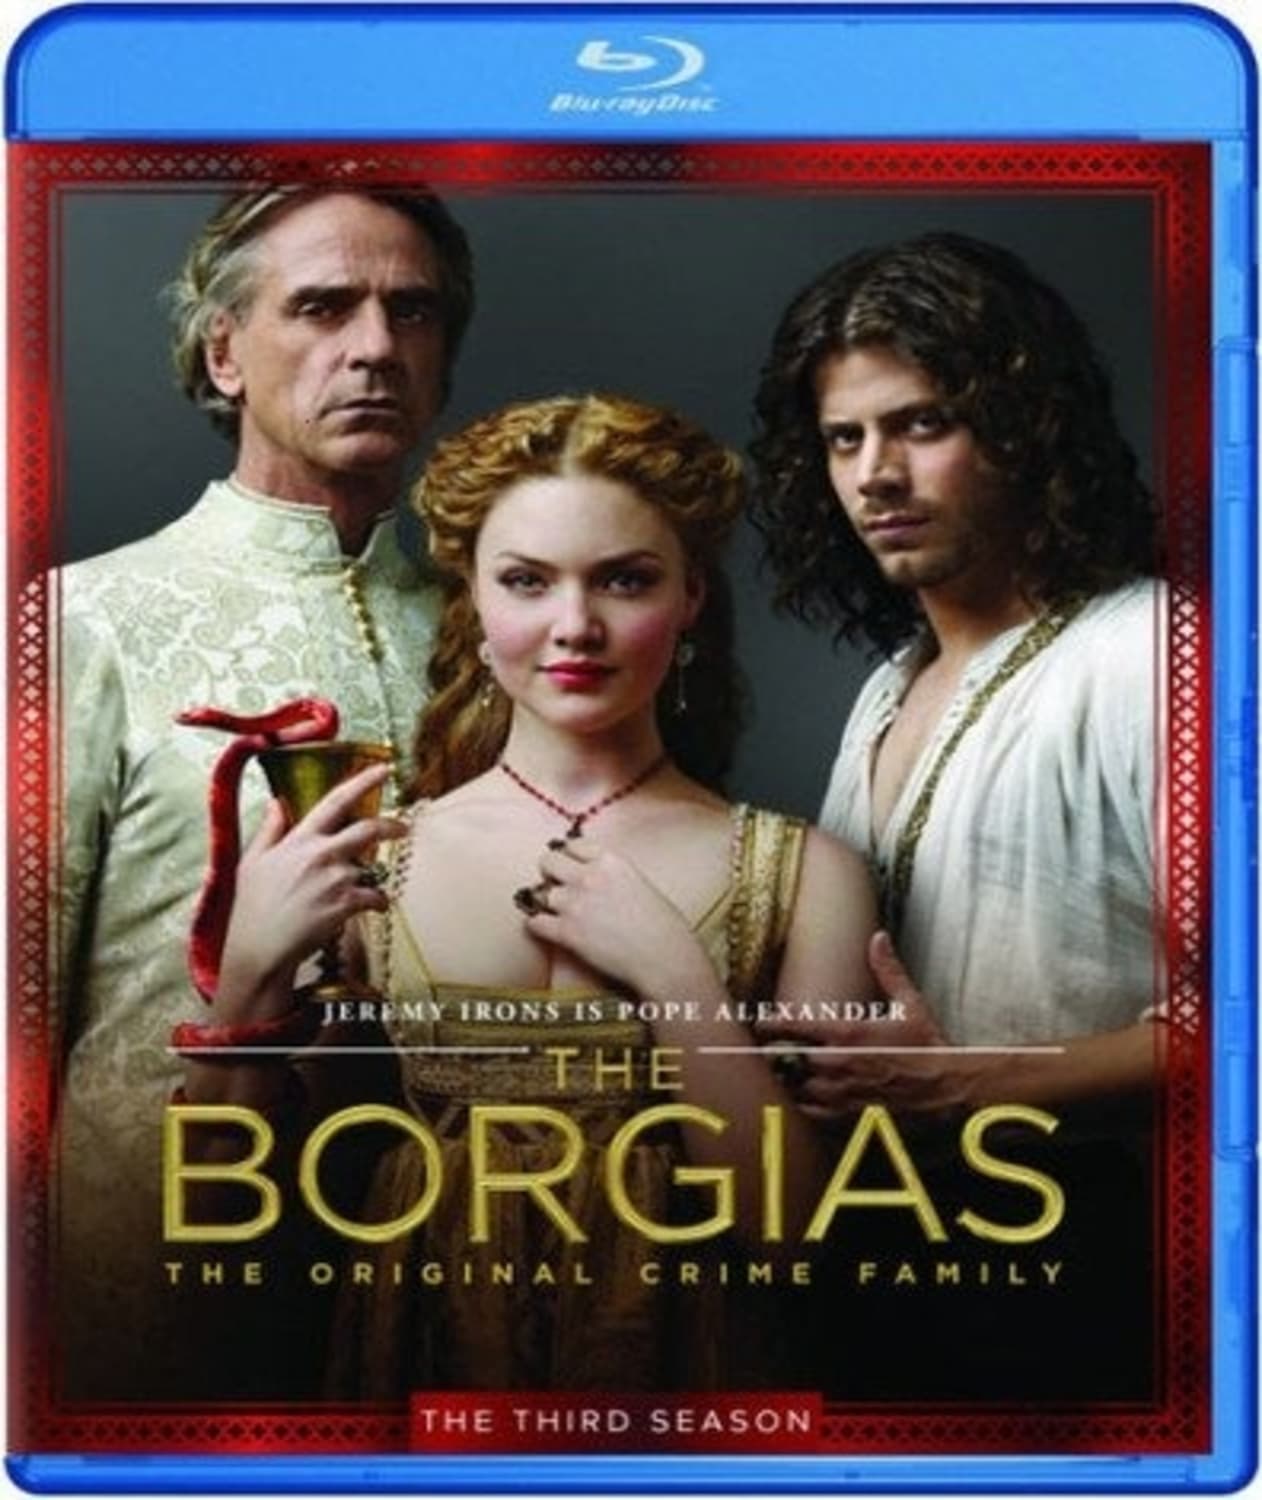 The Borgias: The Final Season (Blu-ray) on MovieShack